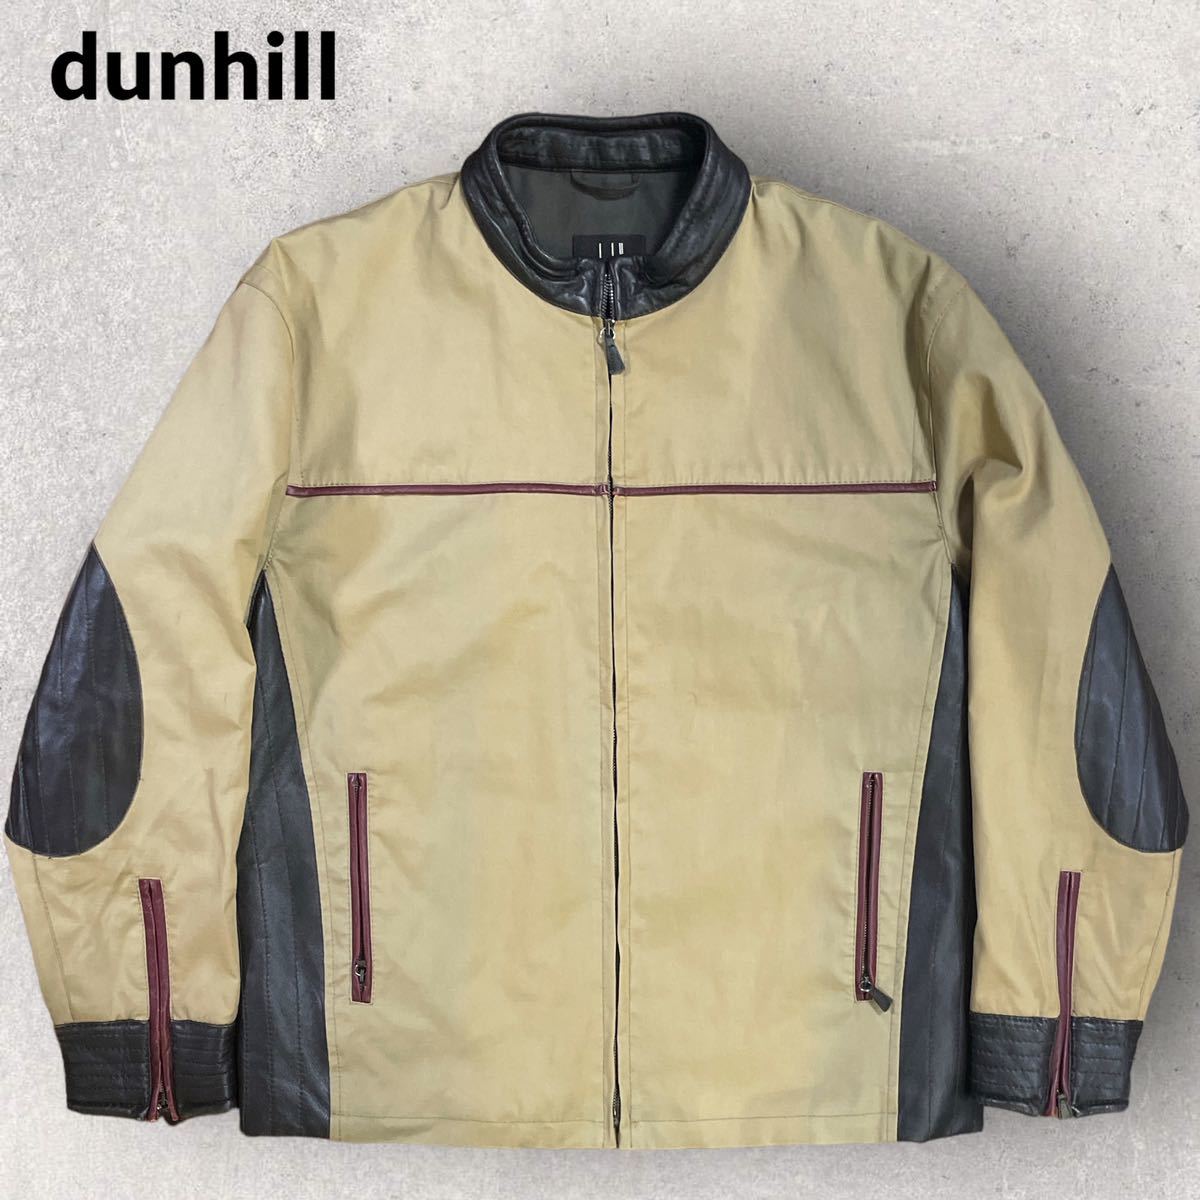 dunhill イタリア製 レザー切替 立ち襟 ジップアップブルゾン Lサイズ